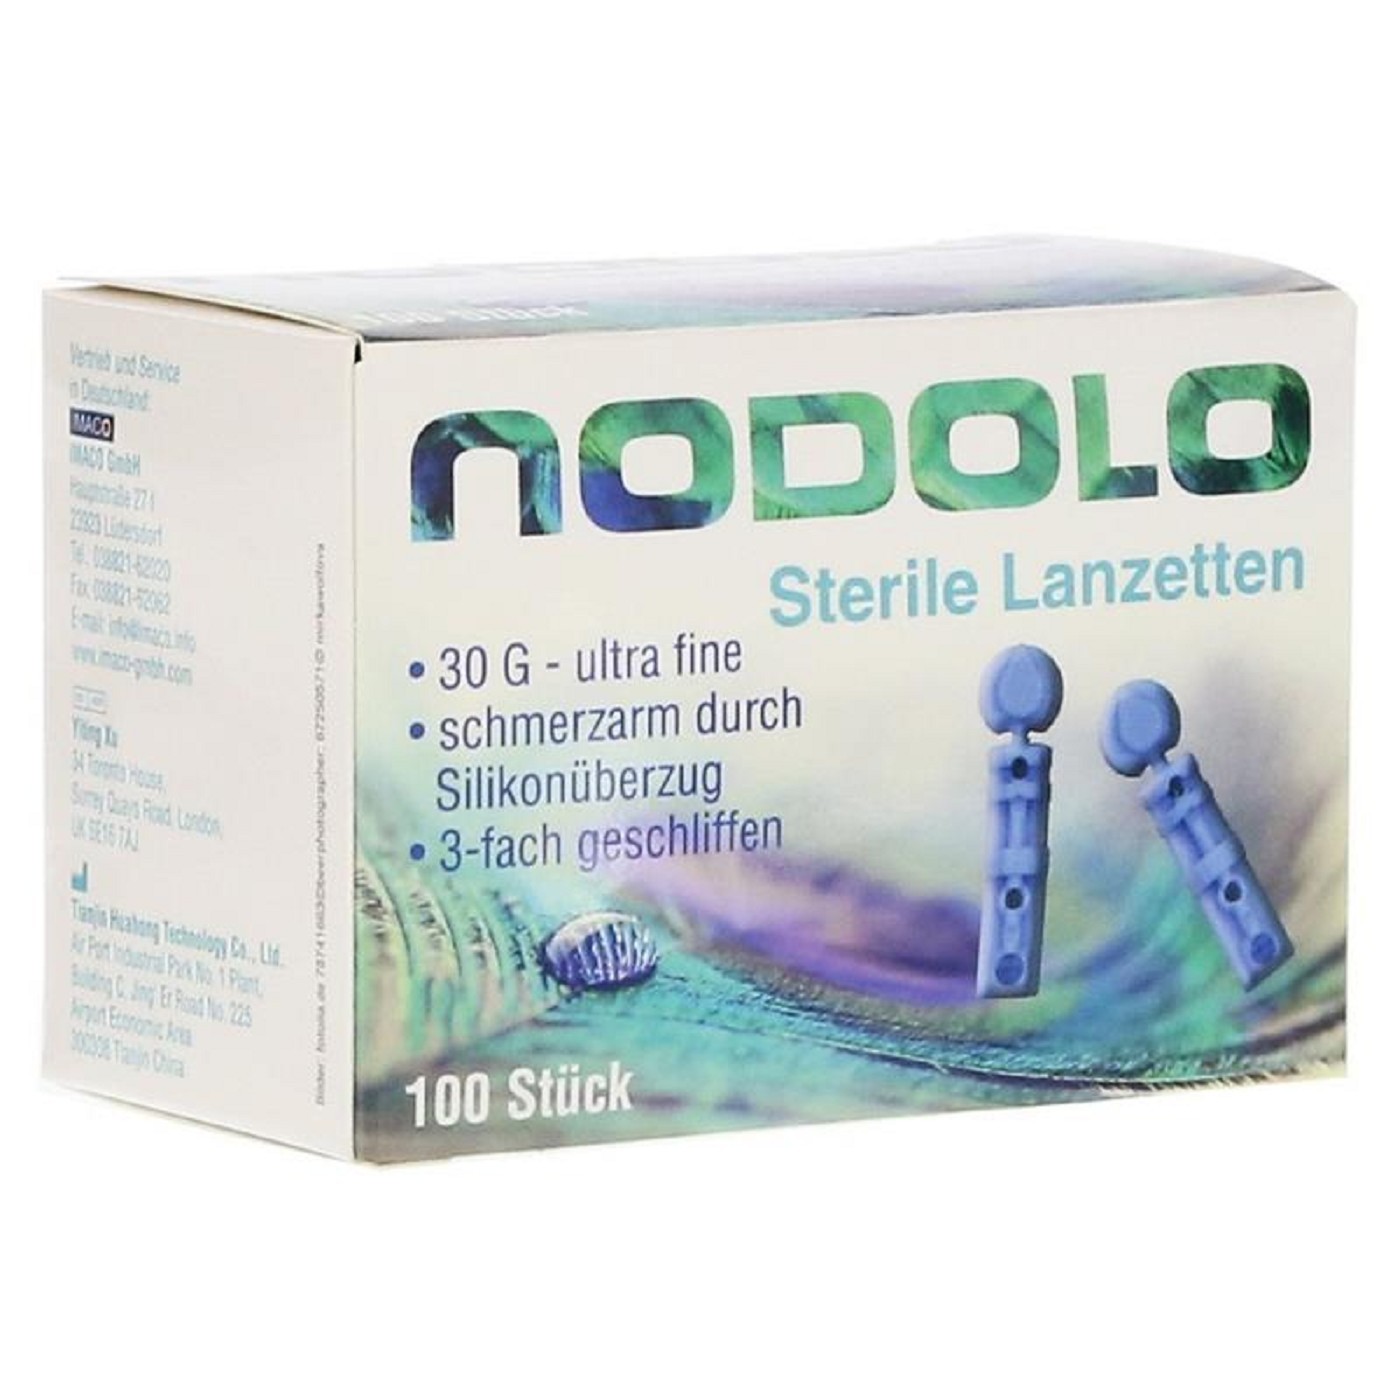 NODOLO Lanzetten 100Stk. 30g. Zur Verwendung mit dem NODOLO Lanzettiergerät